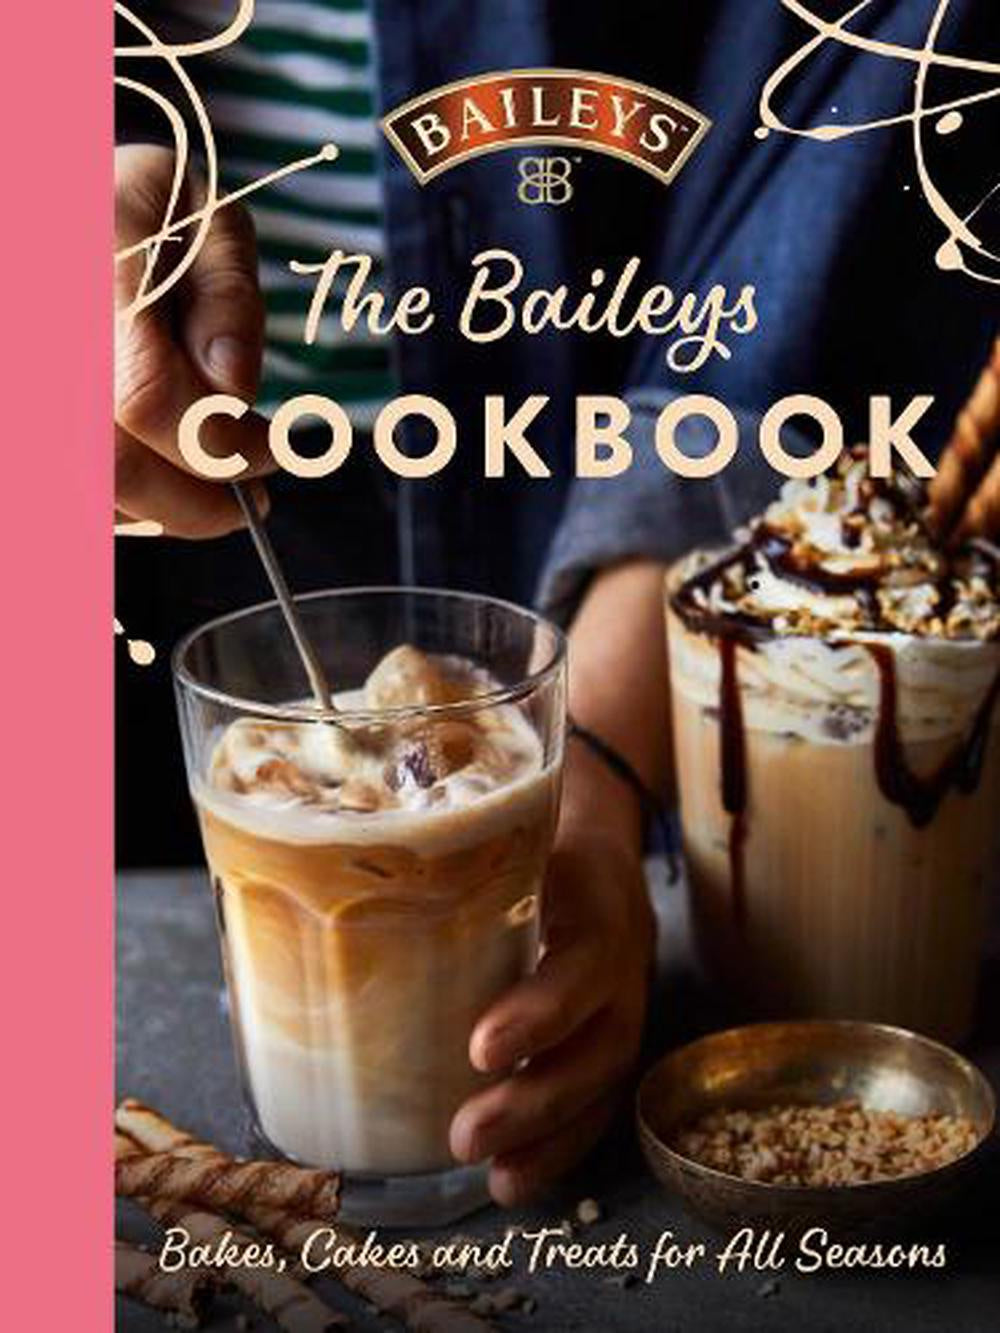 The Baileys Cook Book